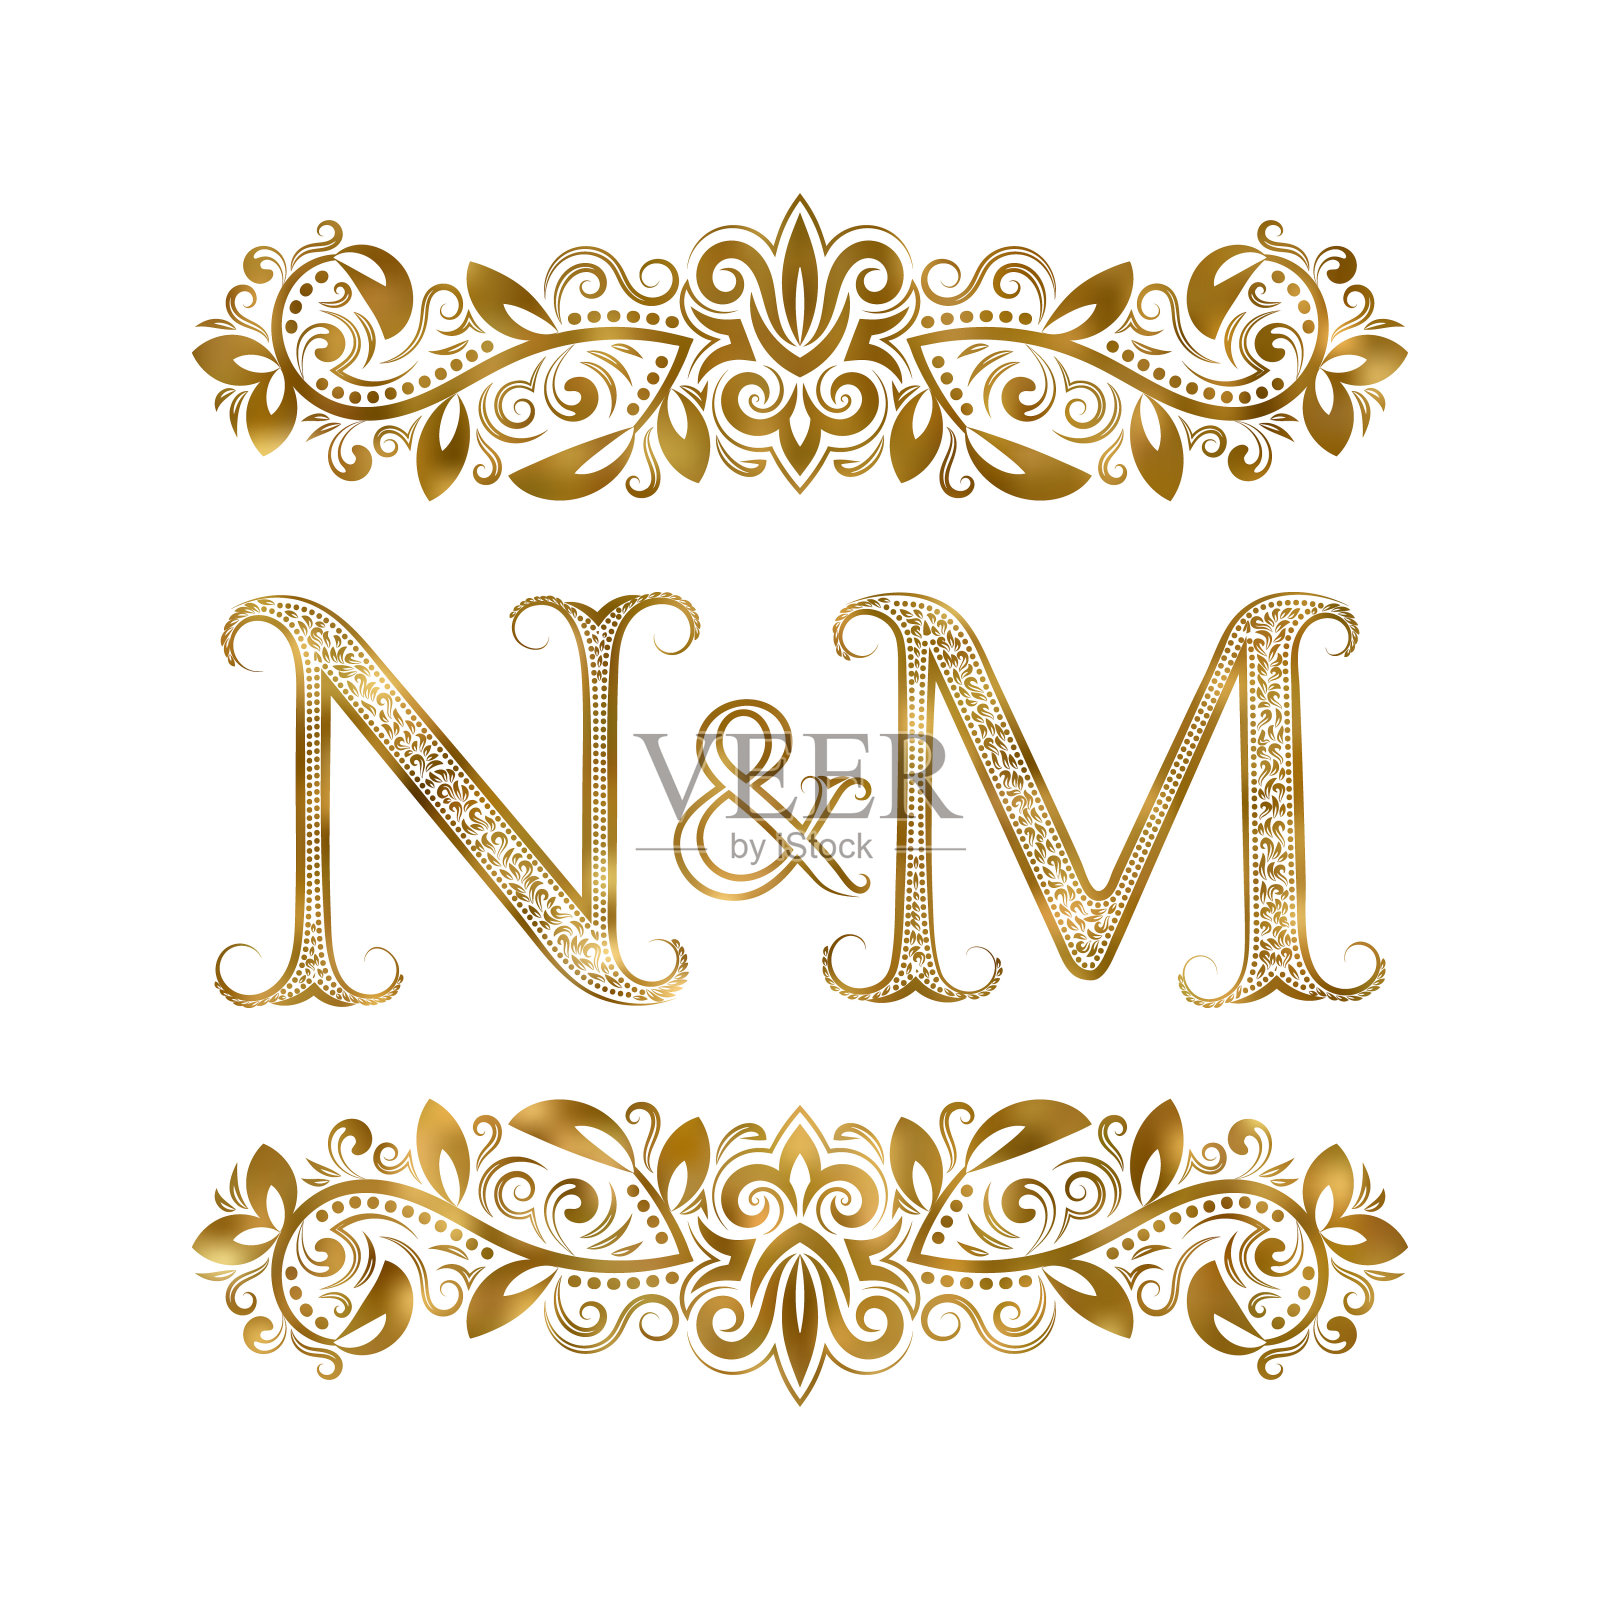 N和M vintage首字母符号。字母周围有装饰元素。皇室风格的婚礼或商业伙伴的字母组合。插画图片素材